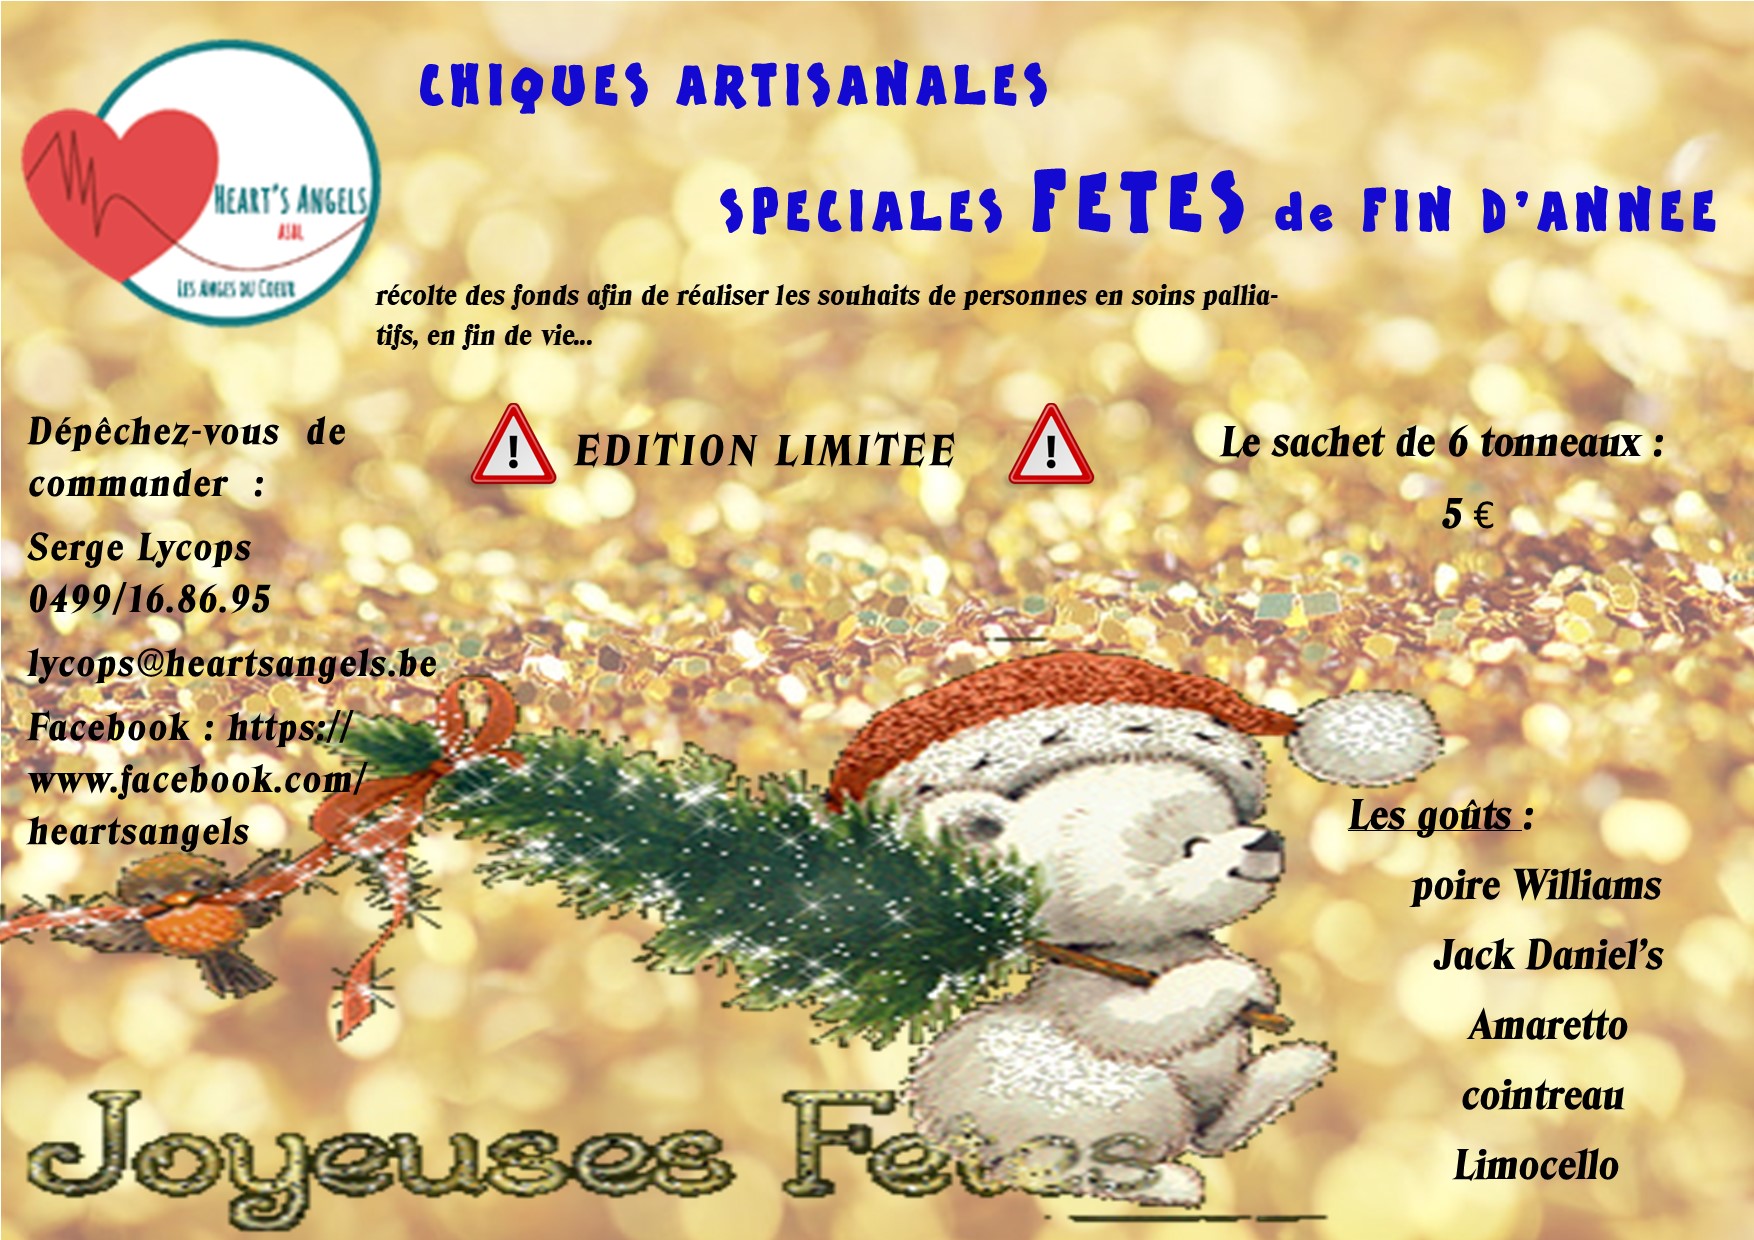 Vente spéciale de chiques artisanales pour les fêtes de fin d'année rue Chäteau d'Aigremont à FLÉMALLE